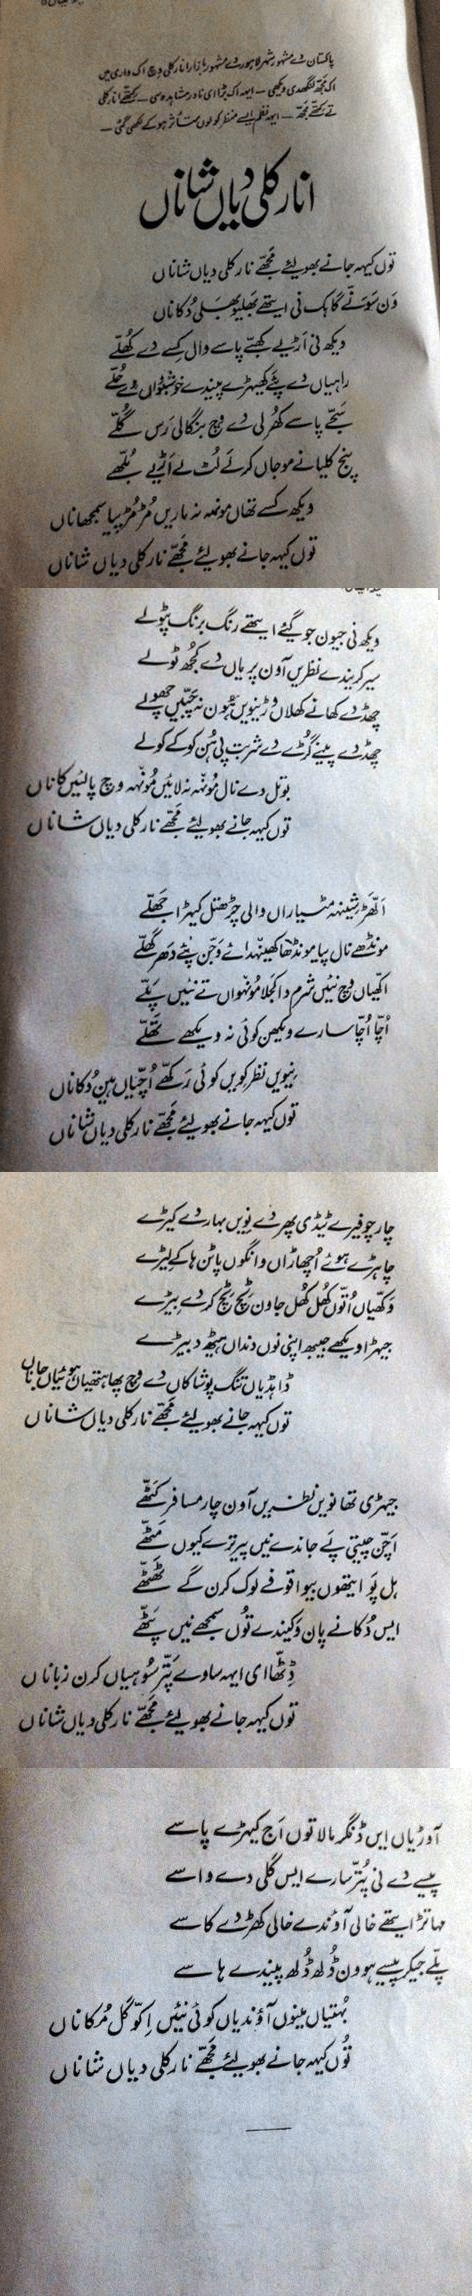 Anarkali Diyan Shanan - Punjabi Funny Poem by Anwar Masood | Ravi Magazine